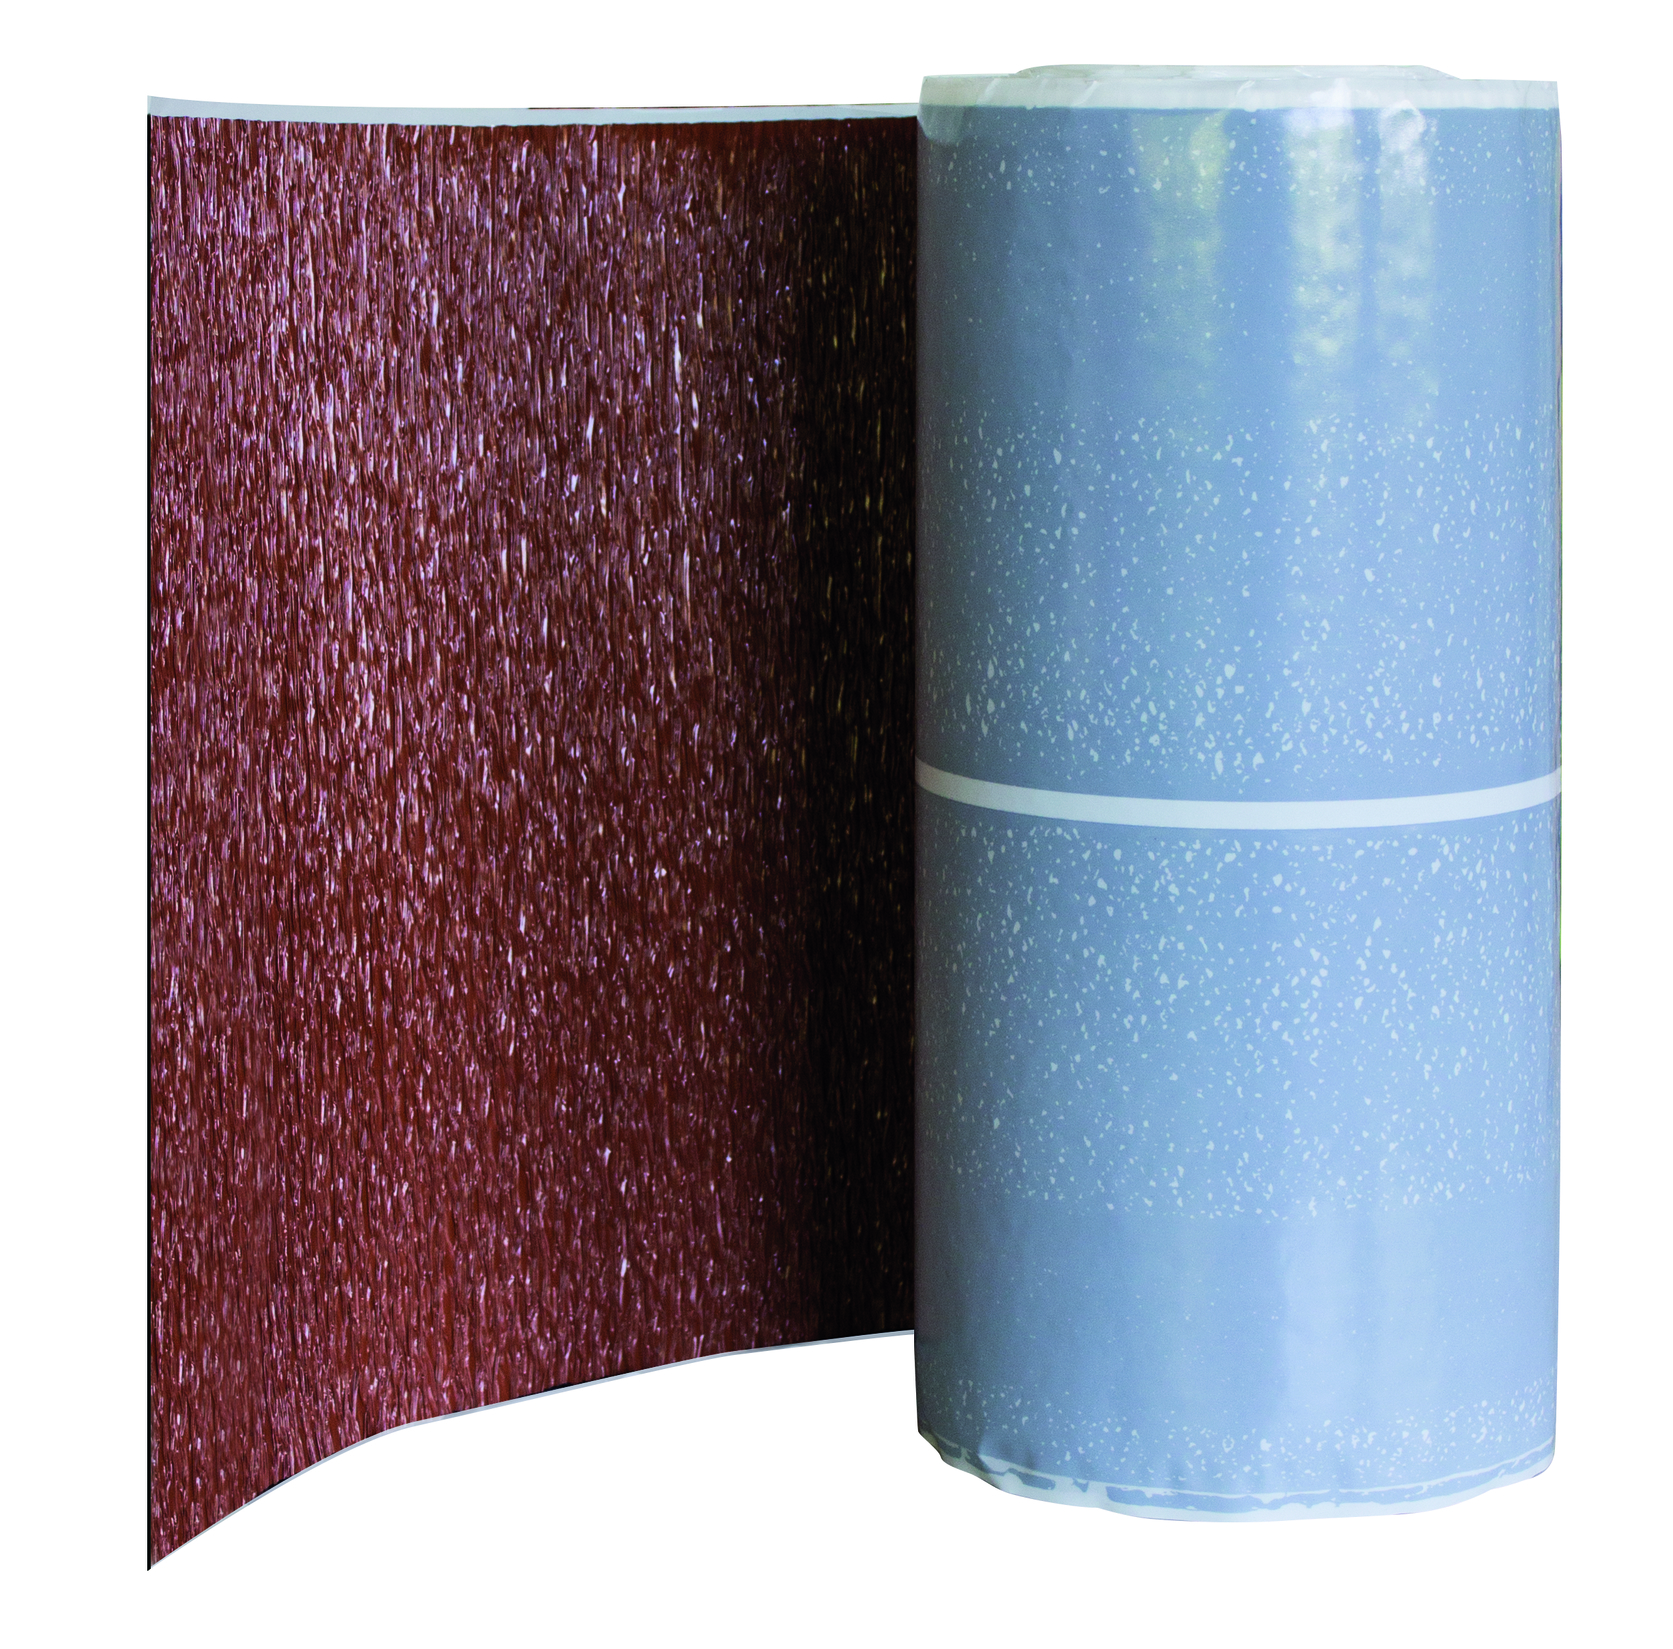 Alu traka za opšivku dimnjaka i zida, 300 mm širina, 5 m dužina (crvena/siva/smeđa/crna)